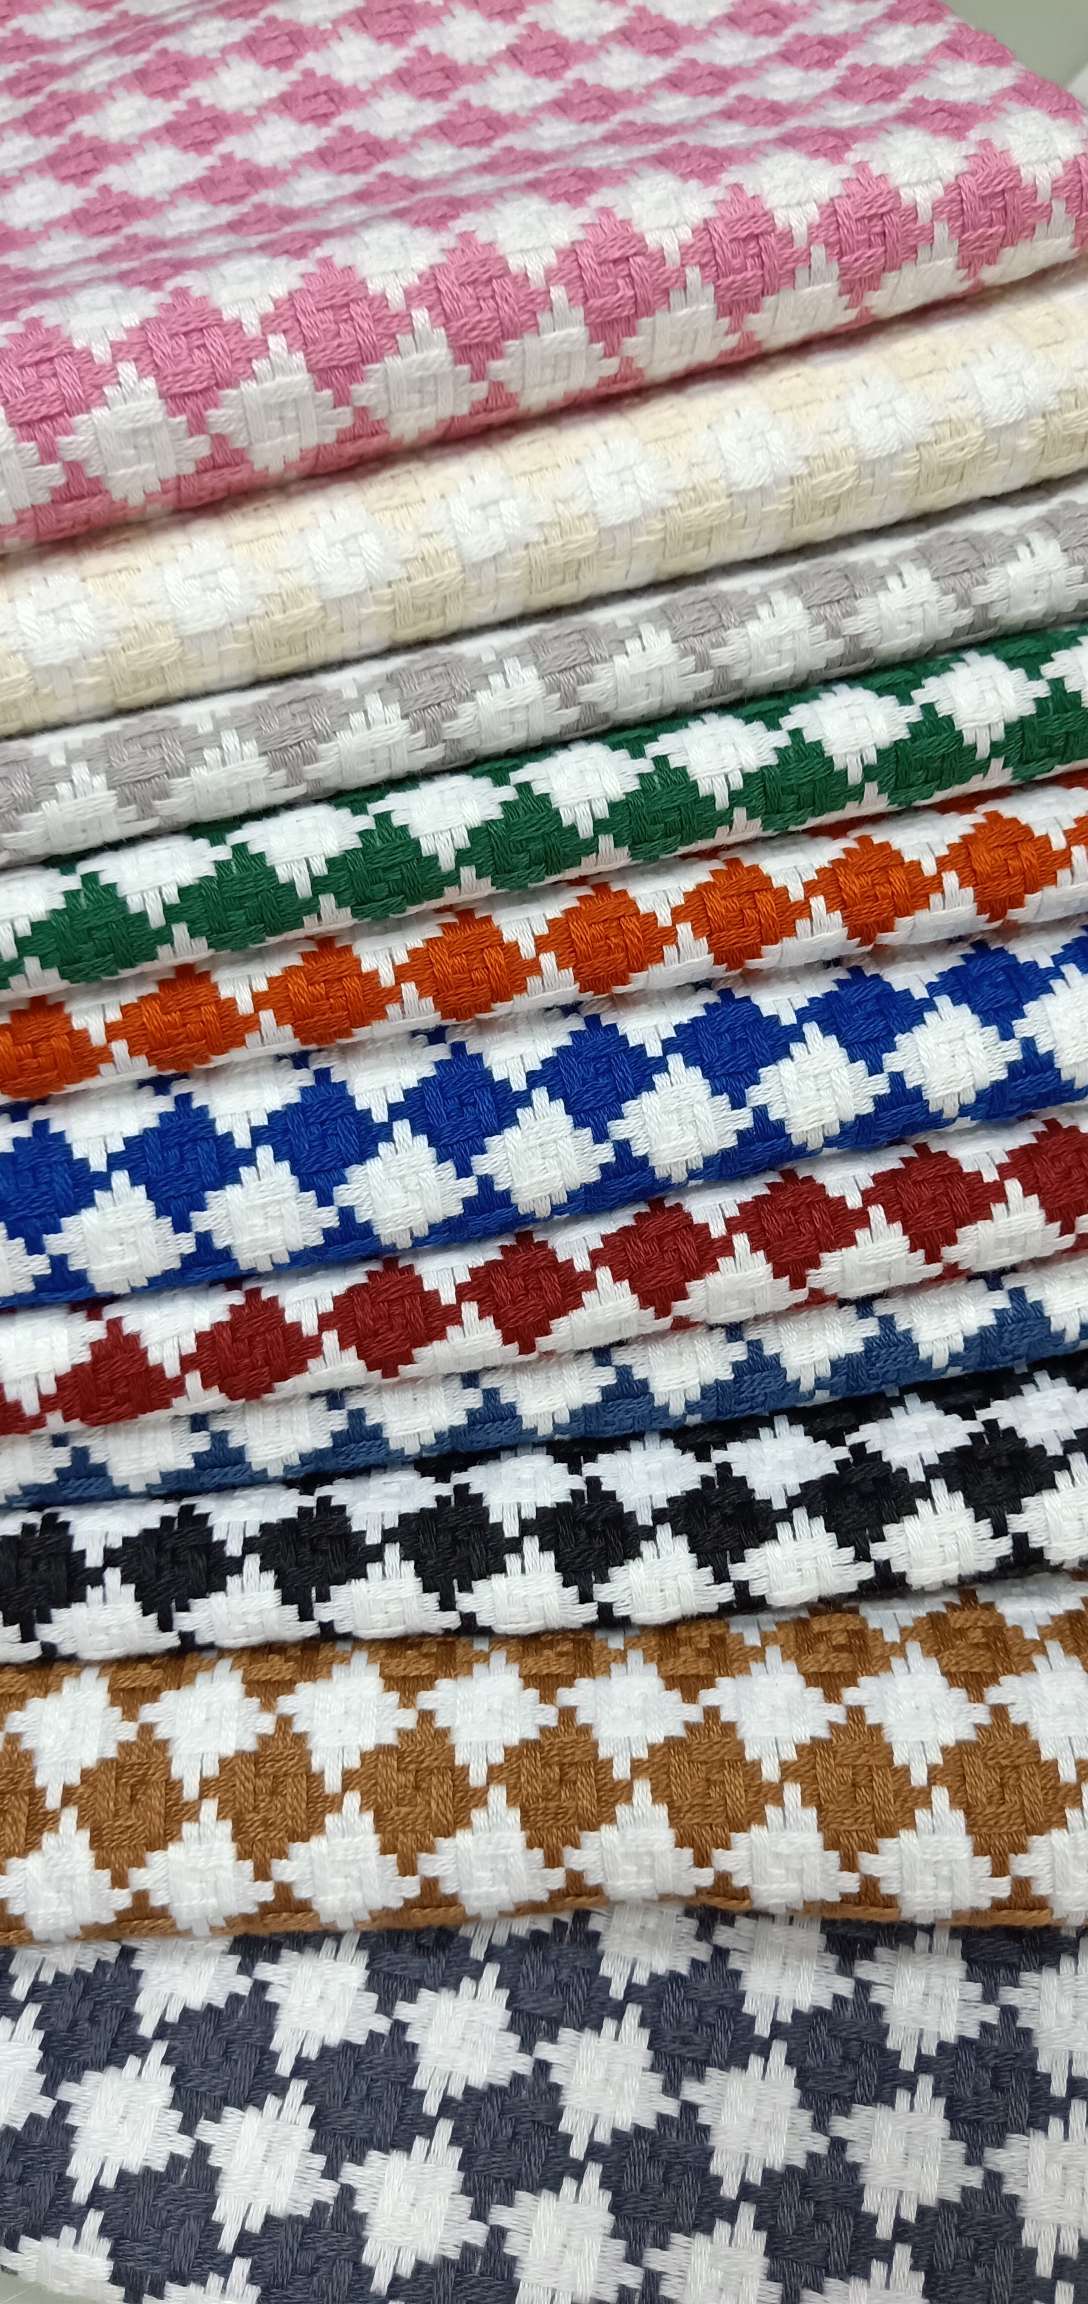 高级纺织工艺制作的材质商品  手感舒适耐用